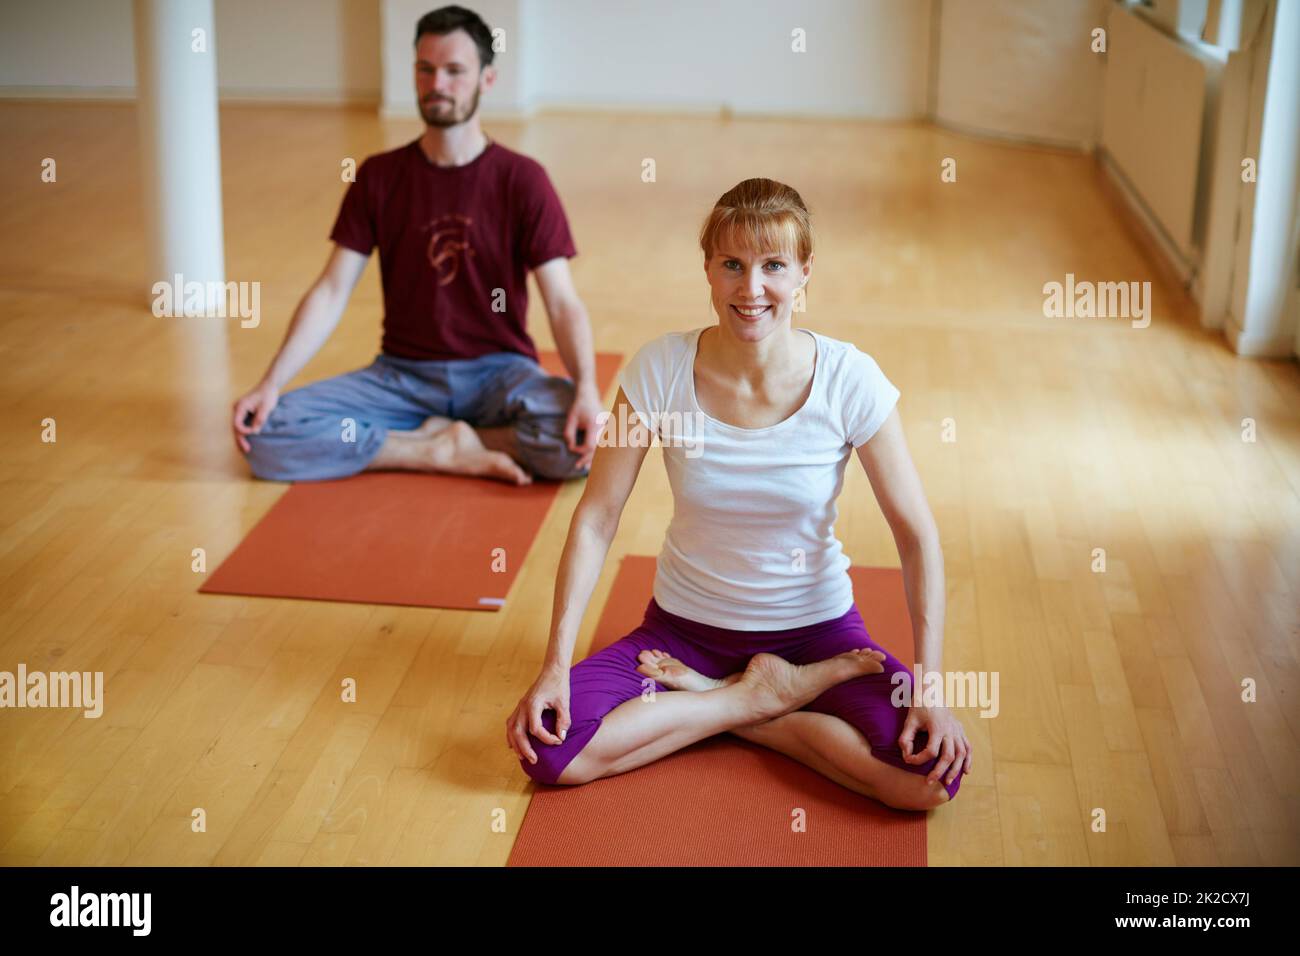 Le meilleur entraînement après une journée bien remplie. Photo de deux personnes faisant du yoga ensemble à l'intérieur. Banque D'Images